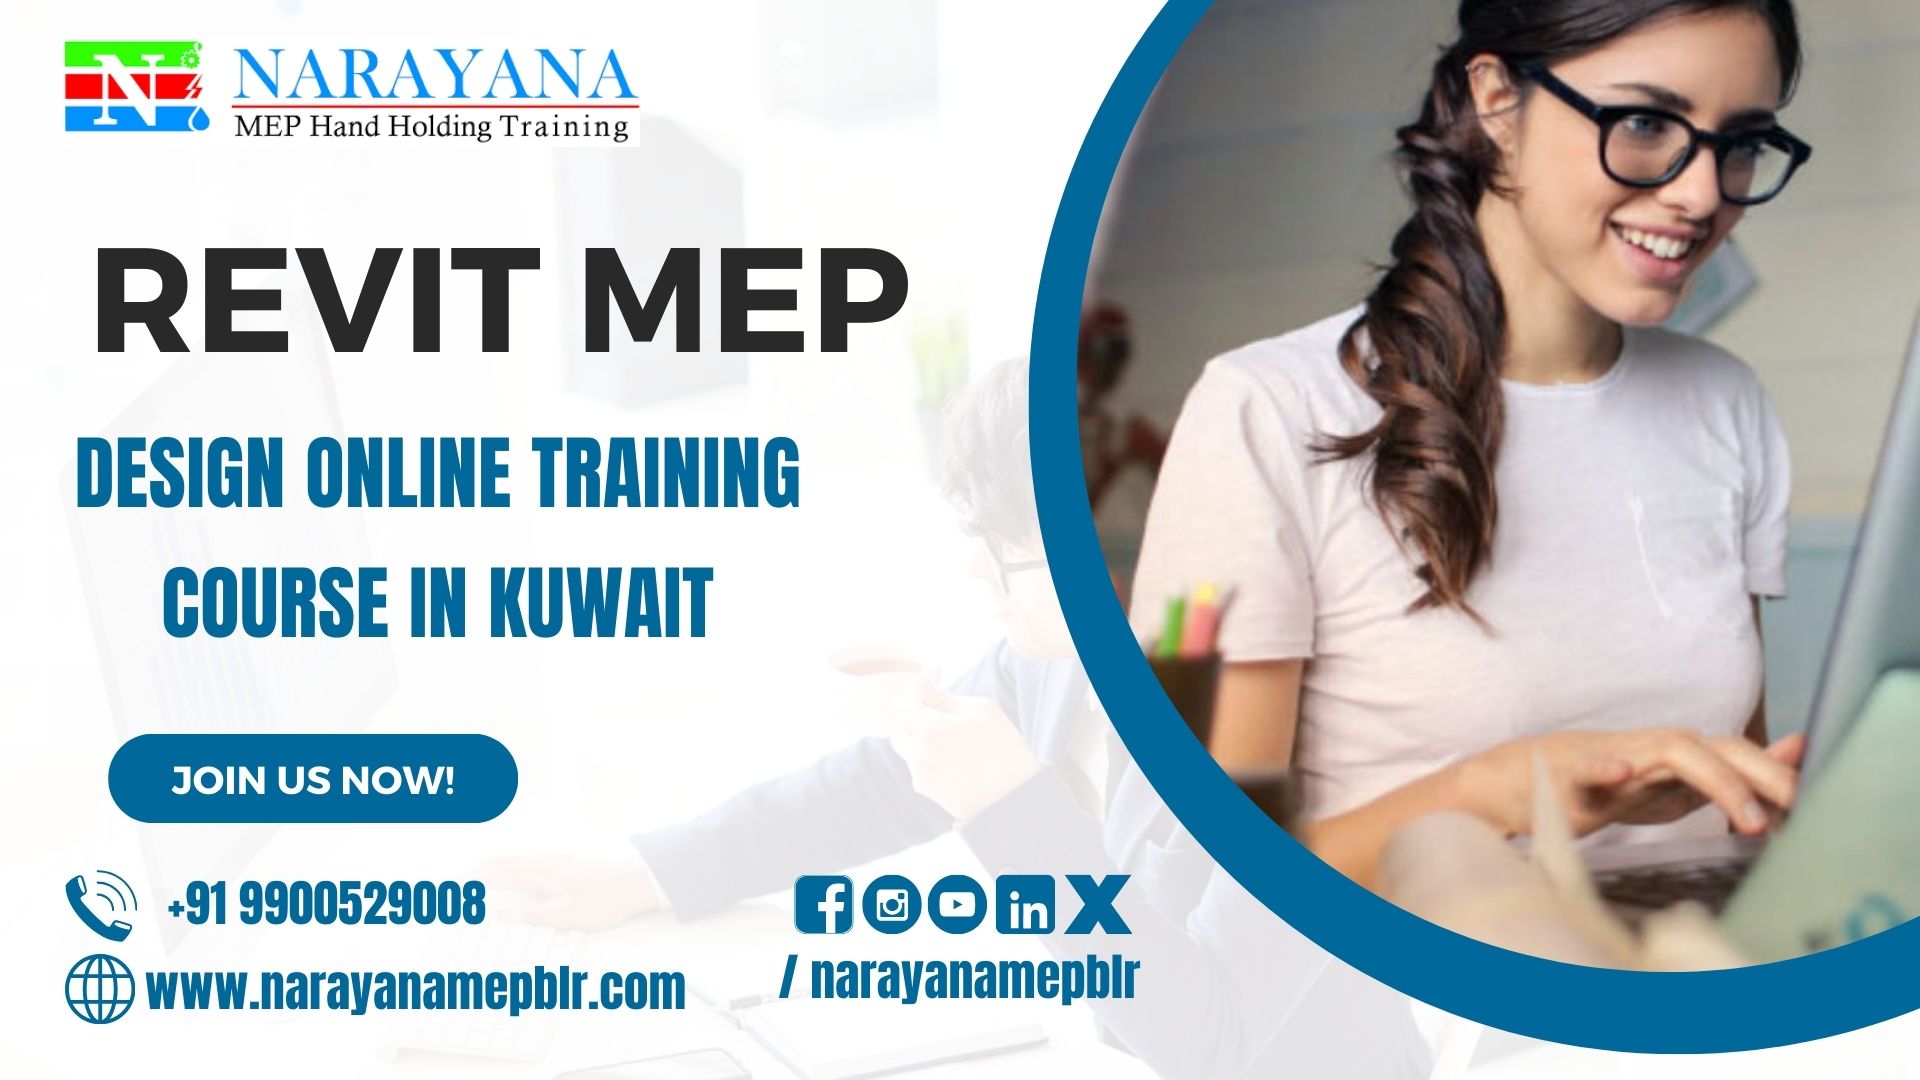 Revit MEP Online Design Training Course in Kuwait